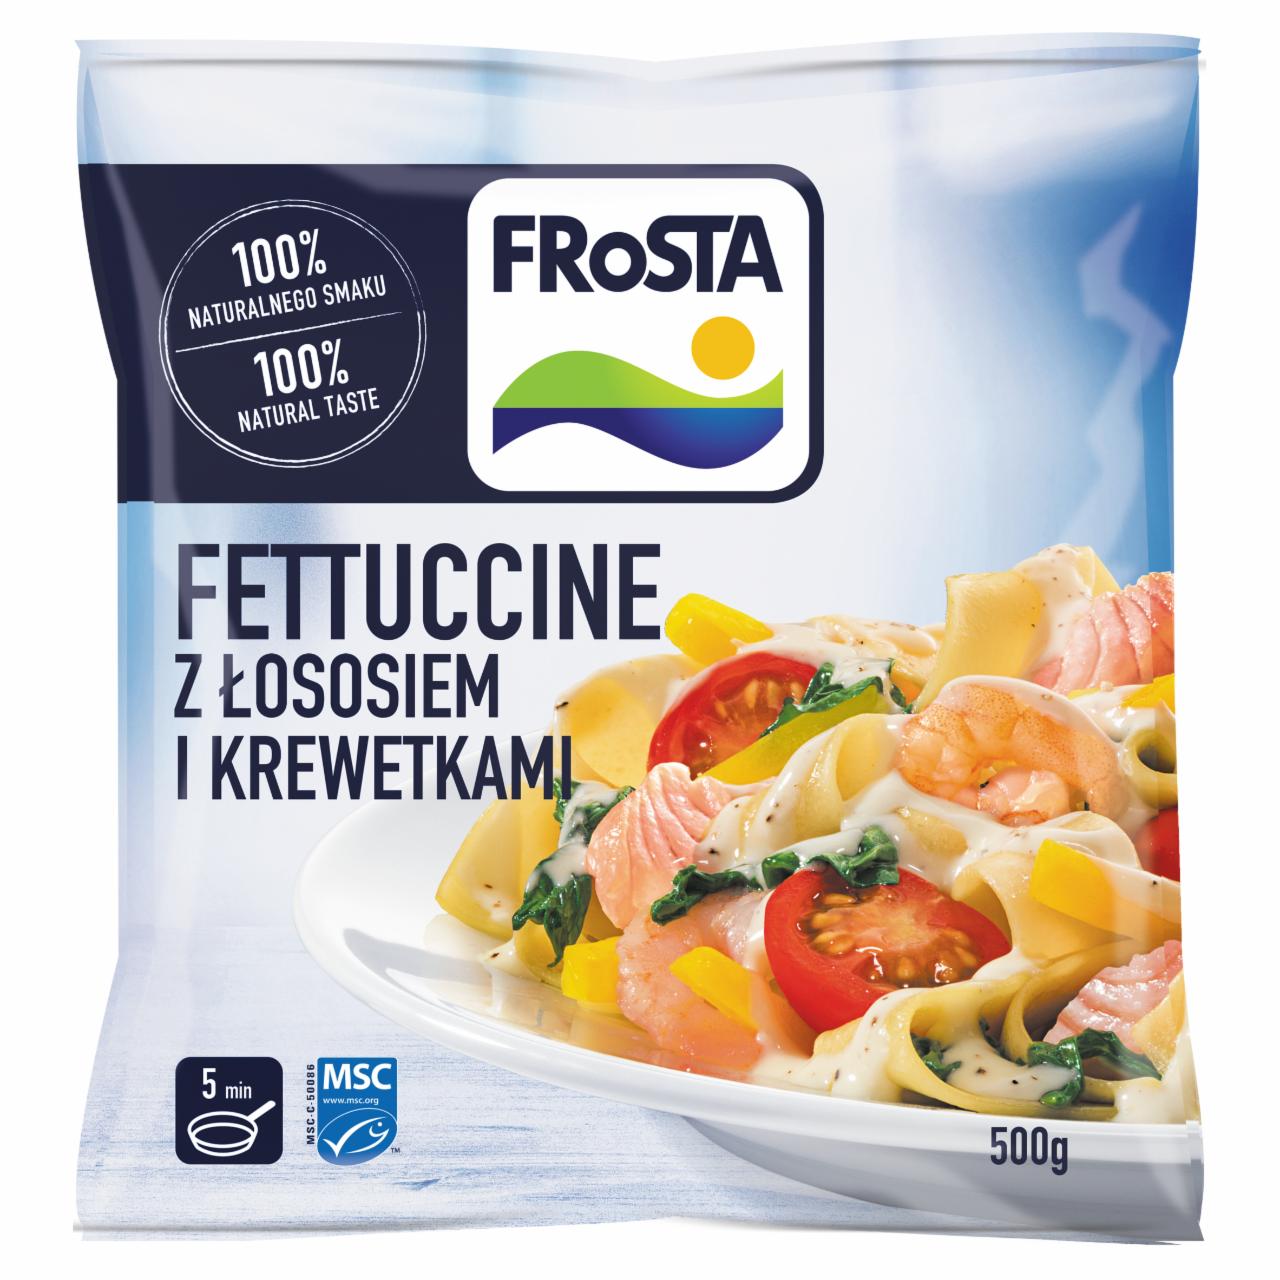 Zdjęcia - FRoSTA Fettuccine z łososiem i krewetkami 500 g